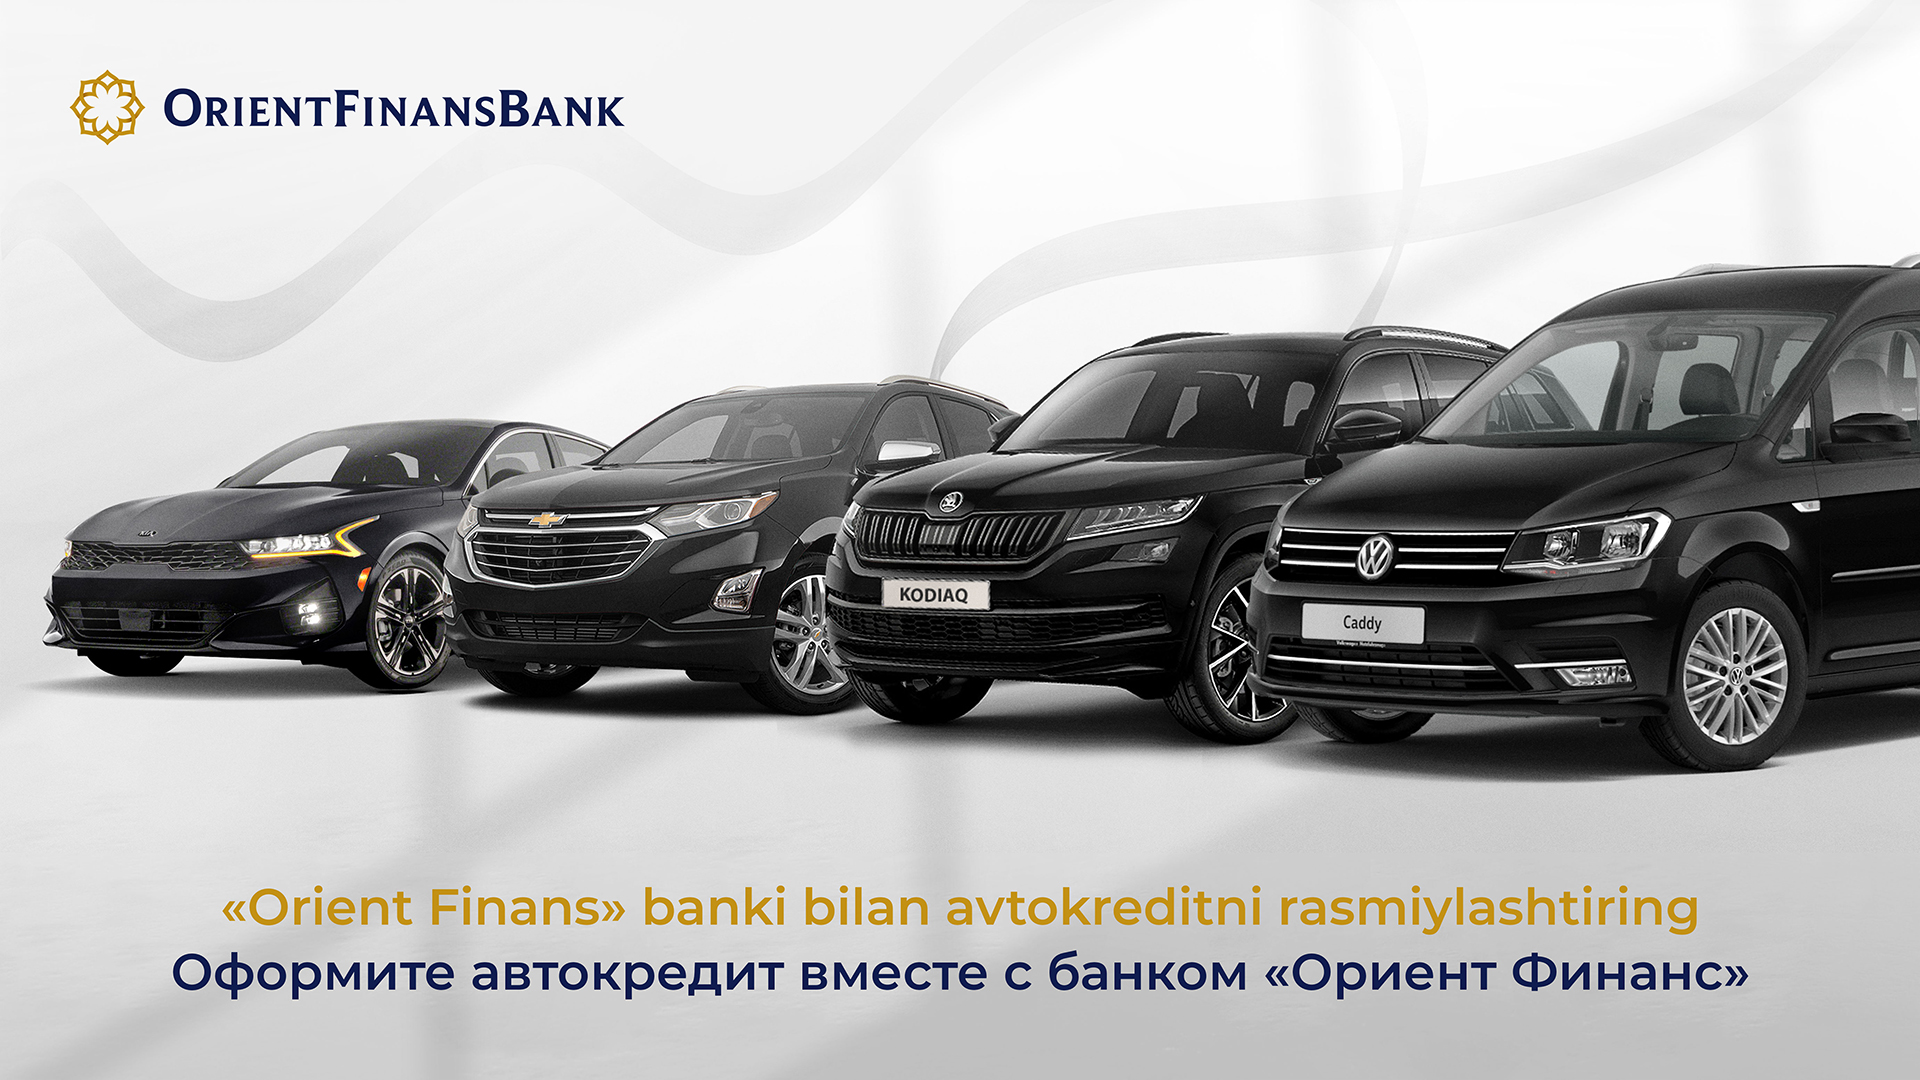 Orient Finans Bank дает выгодные кредиты для покупки автомобиля